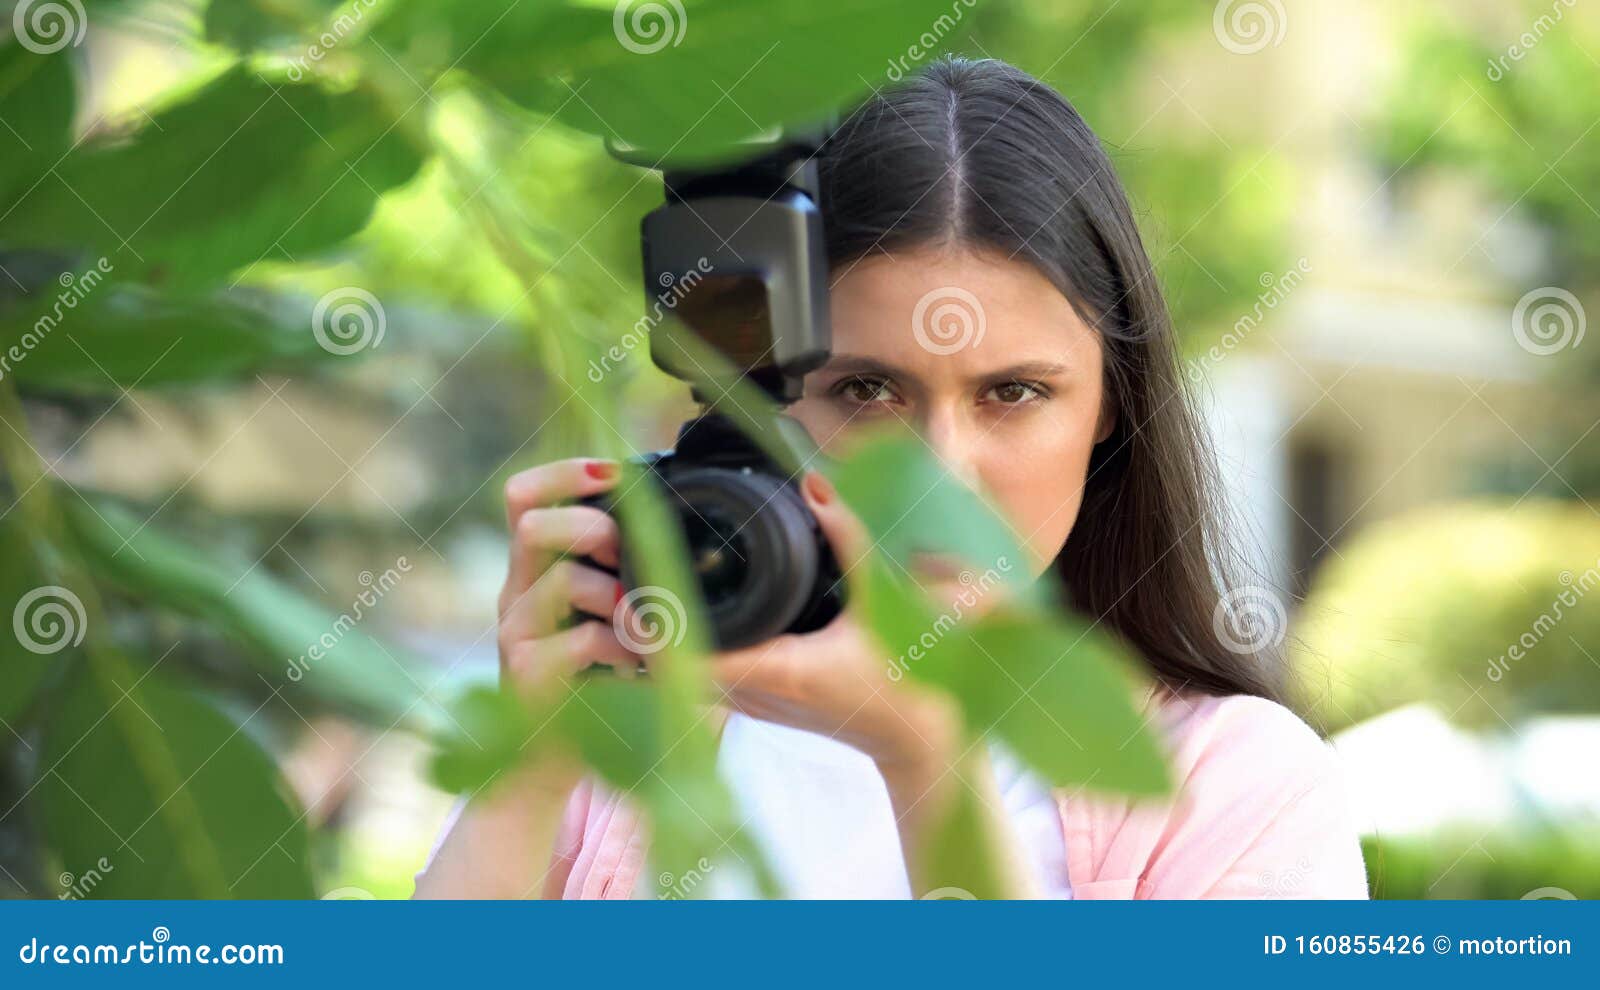 Mujer Sospechosa Con Una Cámara Escondida Detrás De árboles El Parque, Esposo Espía Foto de archivo - de 160855426